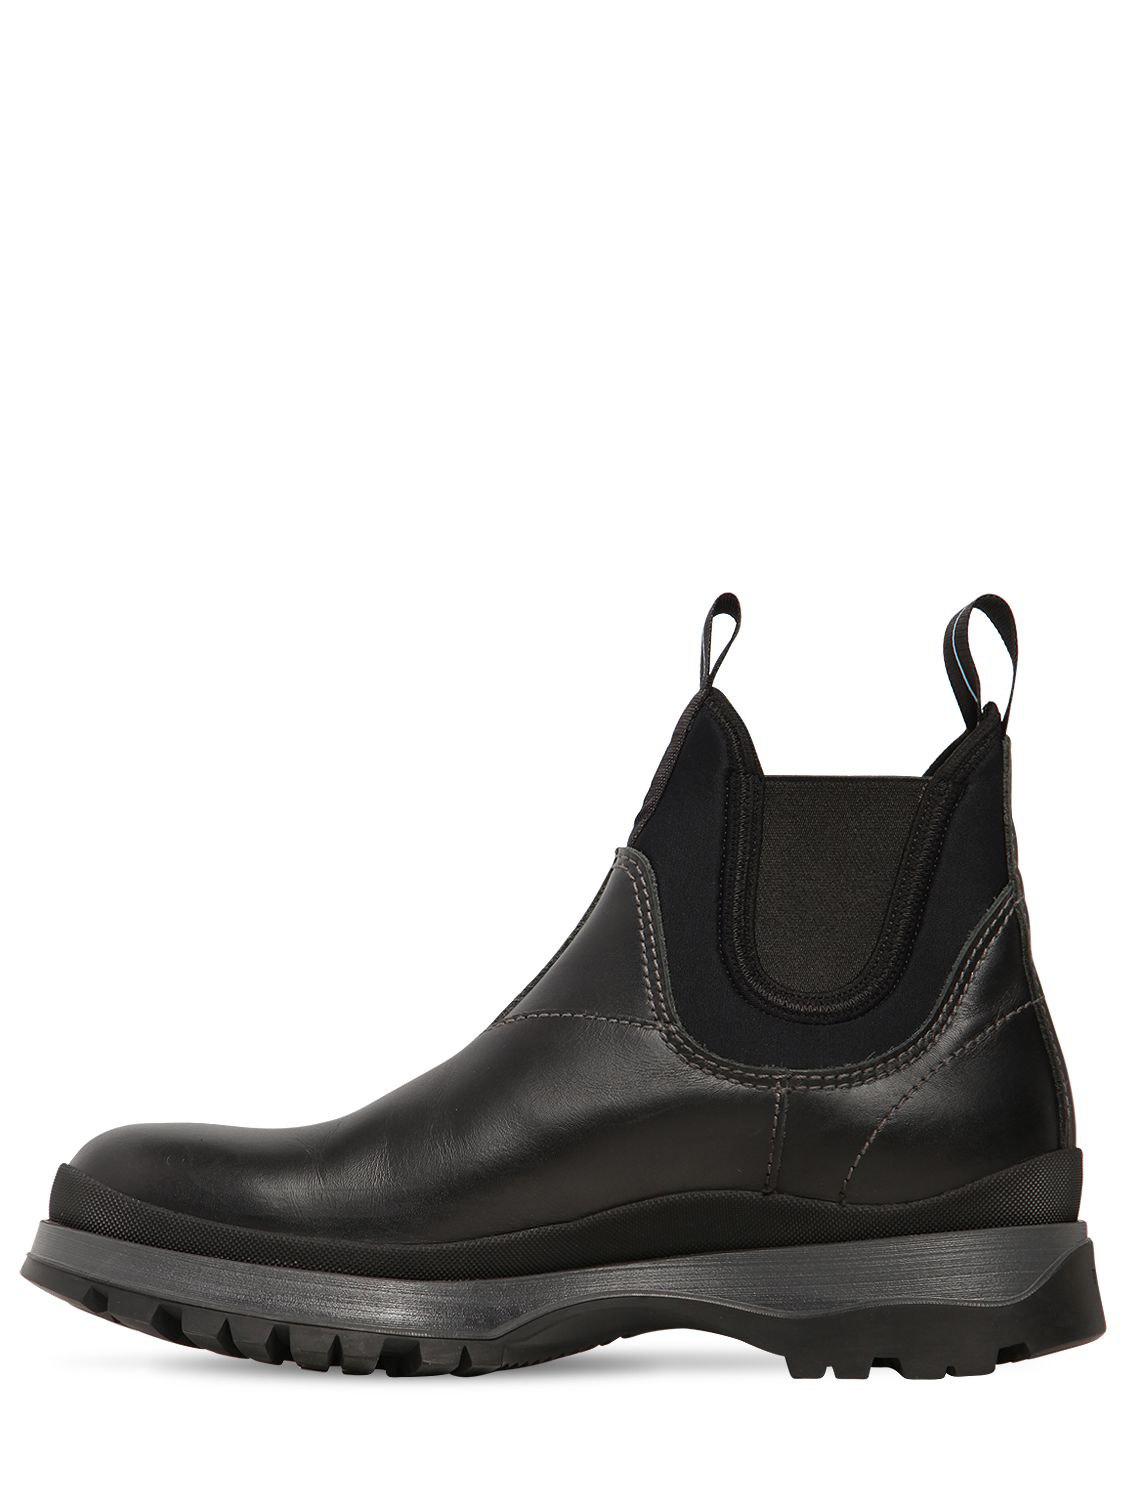 Prada Leather & Neoprene Chelsea Boots in Black for Men - Lyst